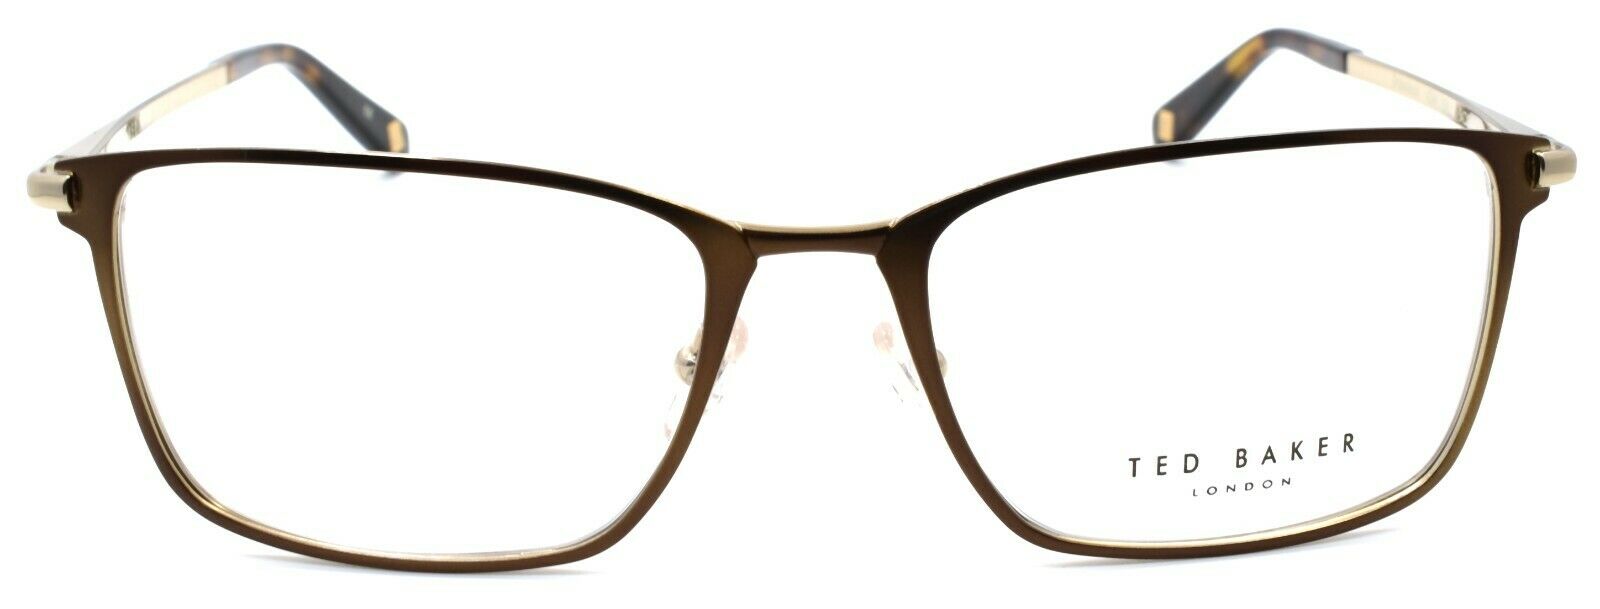 2-Ted Baker Drummond 4244 104 Men's Eyeglasses Frames 54-18-140 Brown / Gold-4894327119097-IKSpecs